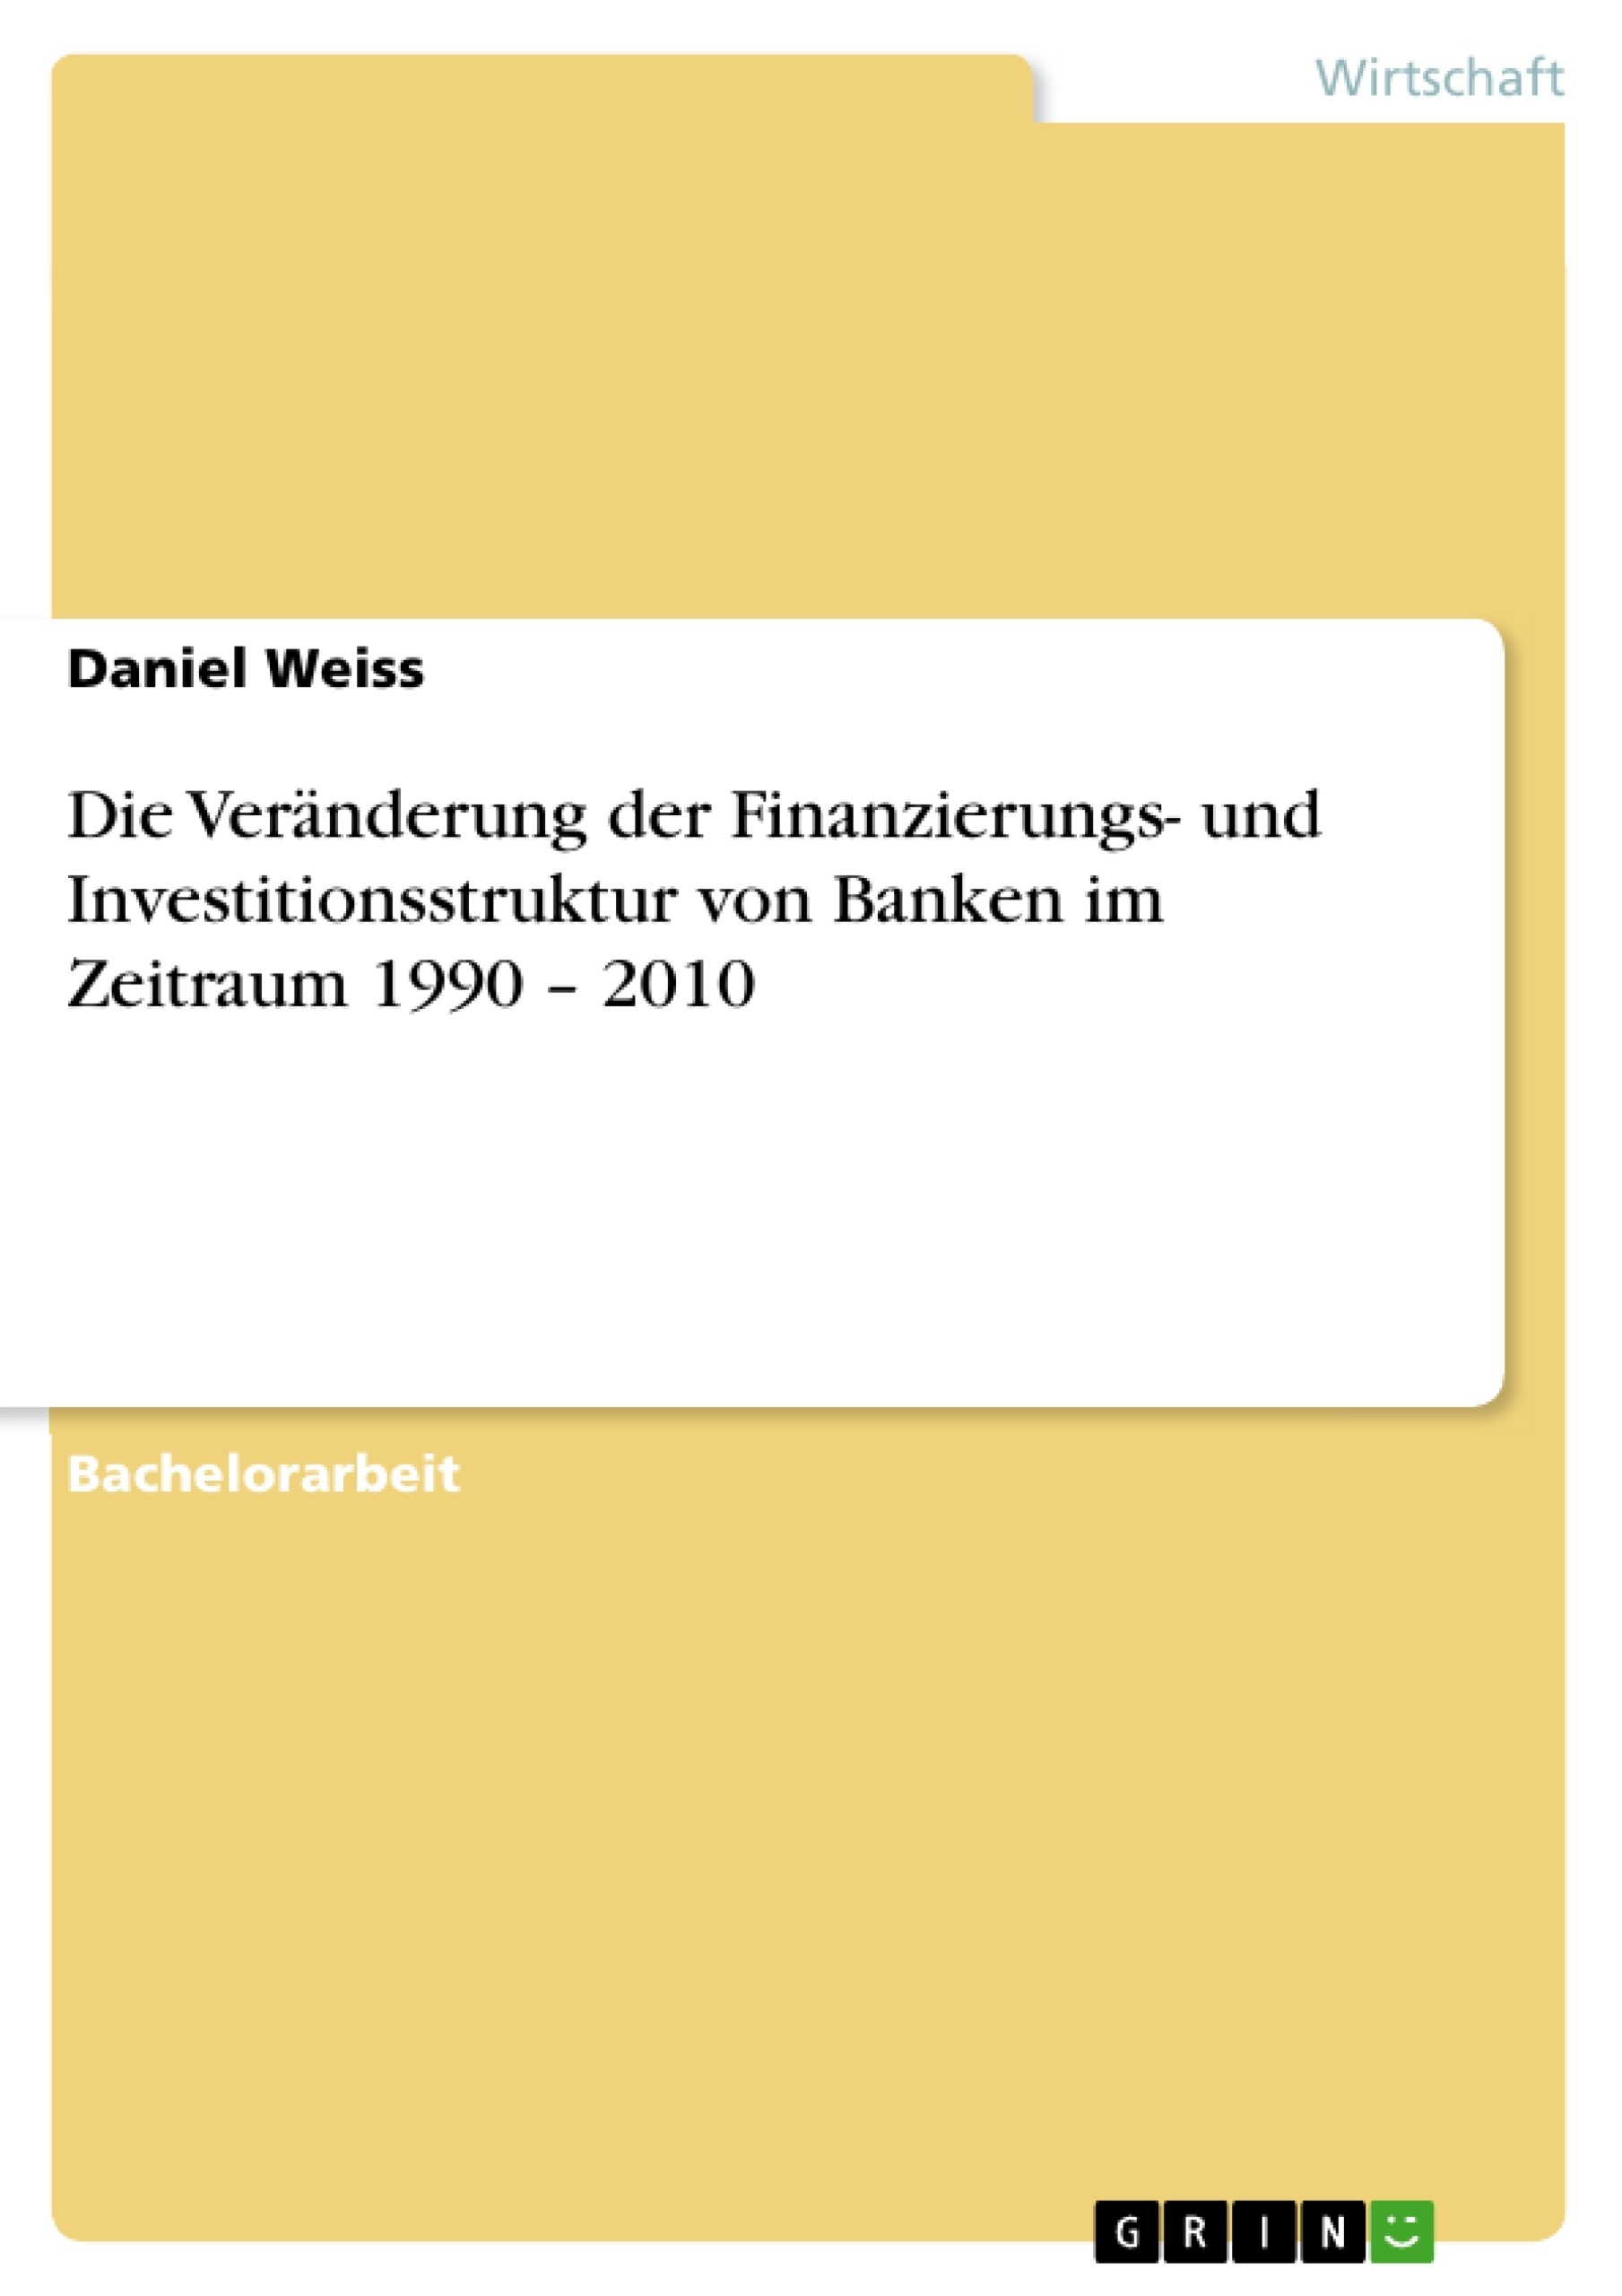 Titre: Die Veränderung der Finanzierungs- und Investitionsstruktur von Banken im Zeitraum 1990 – 2010